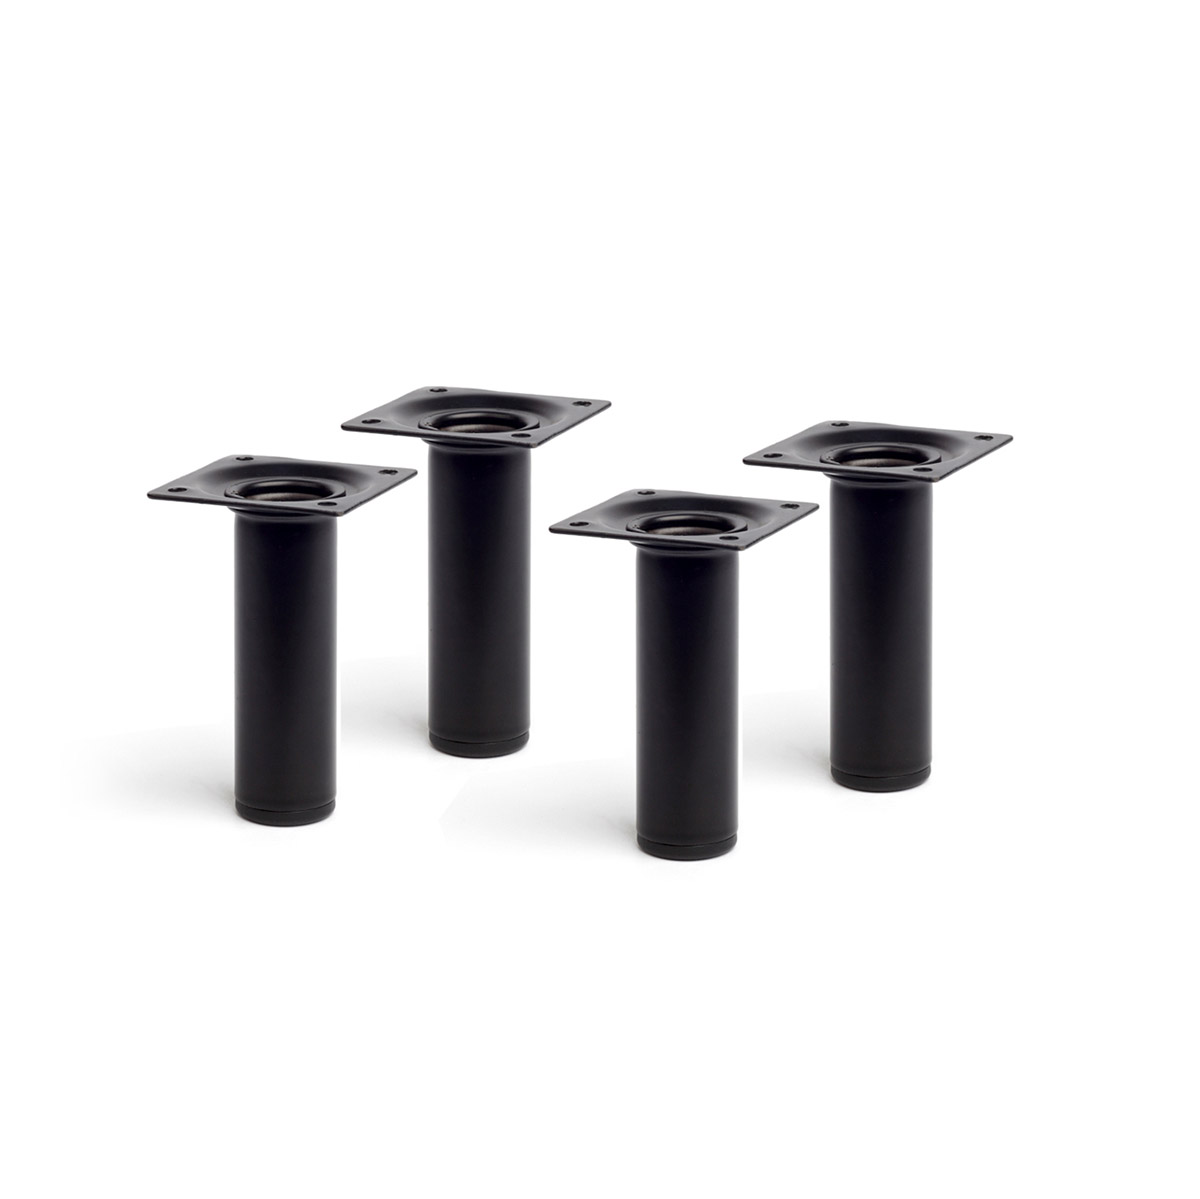 Jeu de 4 pieds cylindriques en acier d'une hauteur de 100 mm et finition noir. Dimensions: 30x30x100 mm